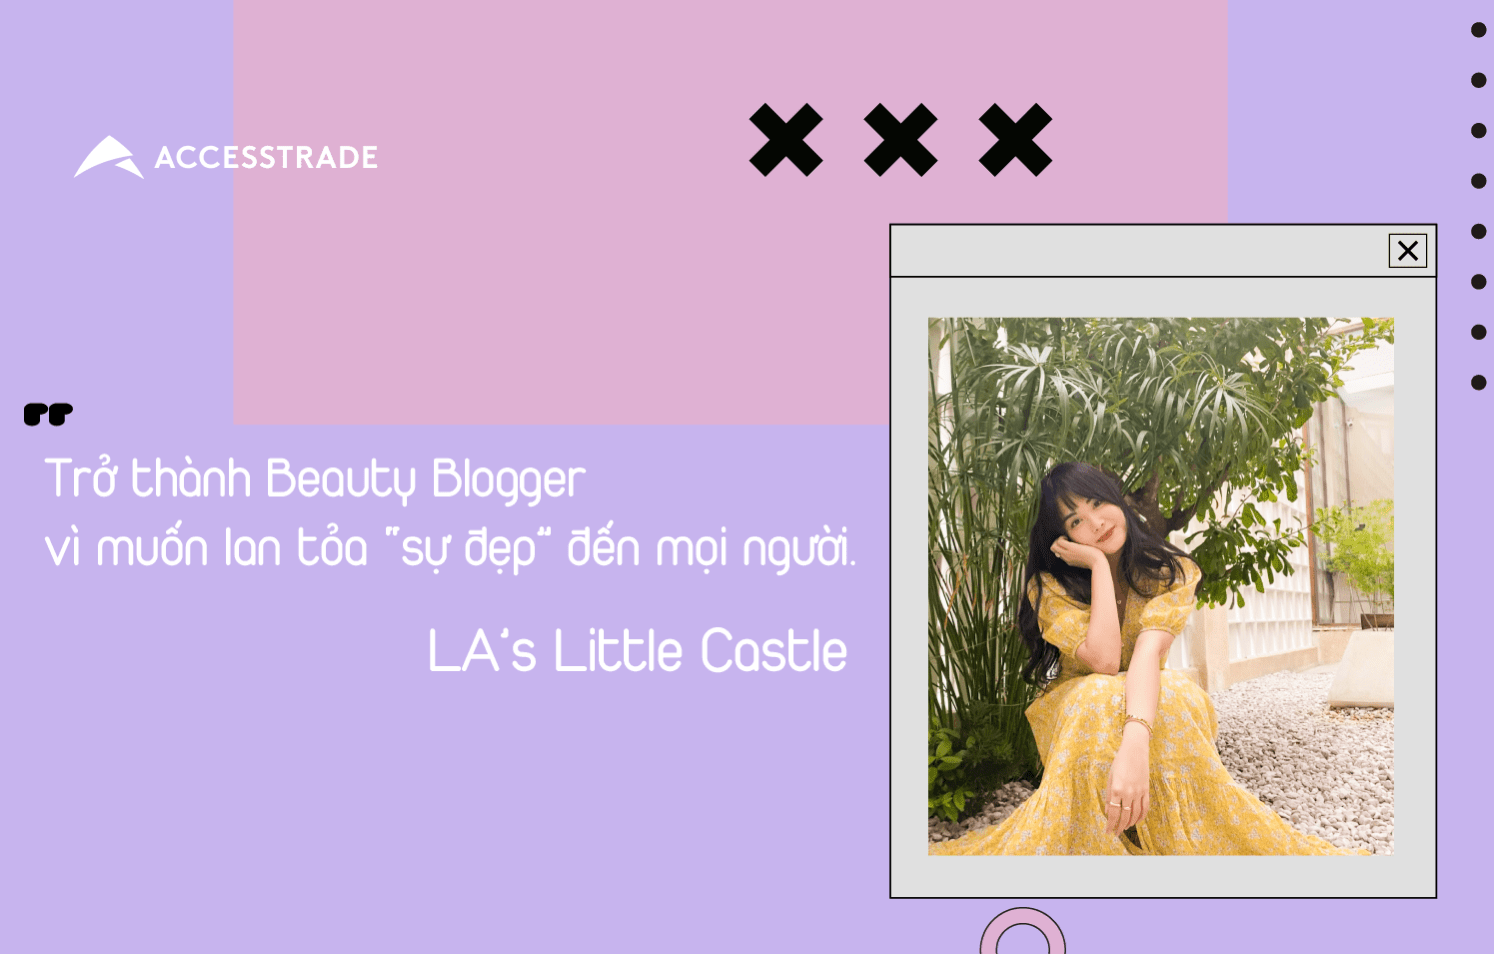 Influencer Marketing LA’s Little Castle: Trở thành Beauty Blogger vì muốn lan tỏa “sự đẹp” đến mọi người